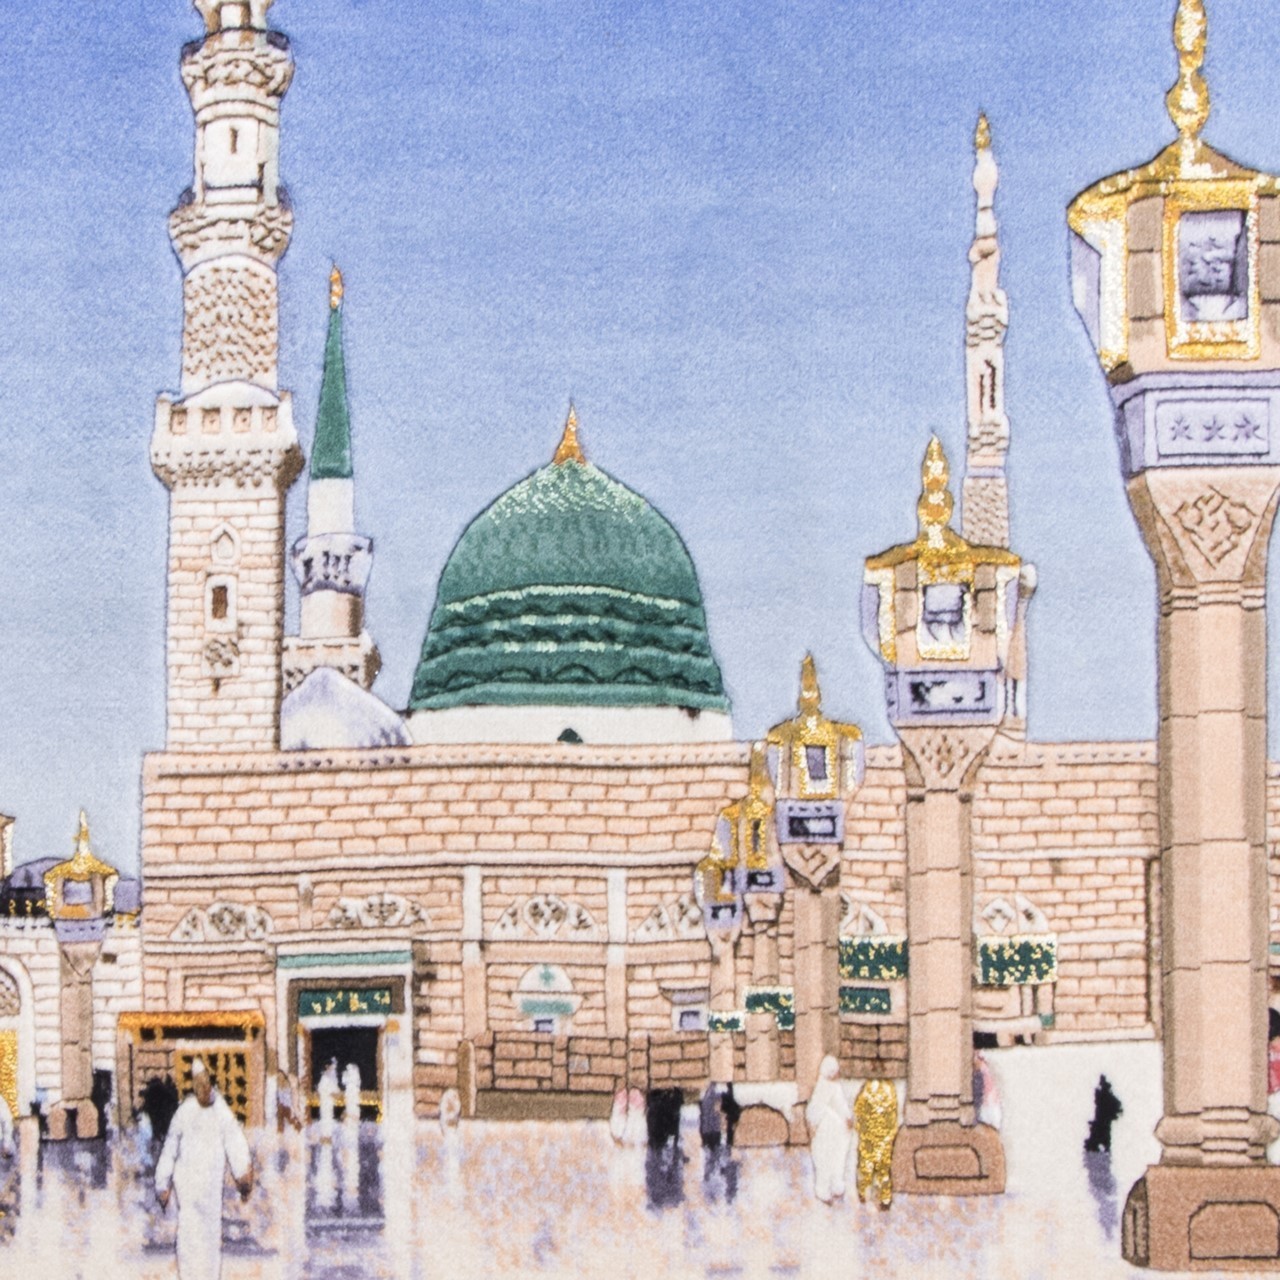 تابلو فرش دستباف منظره مسجد النبی برجسته کد 901430